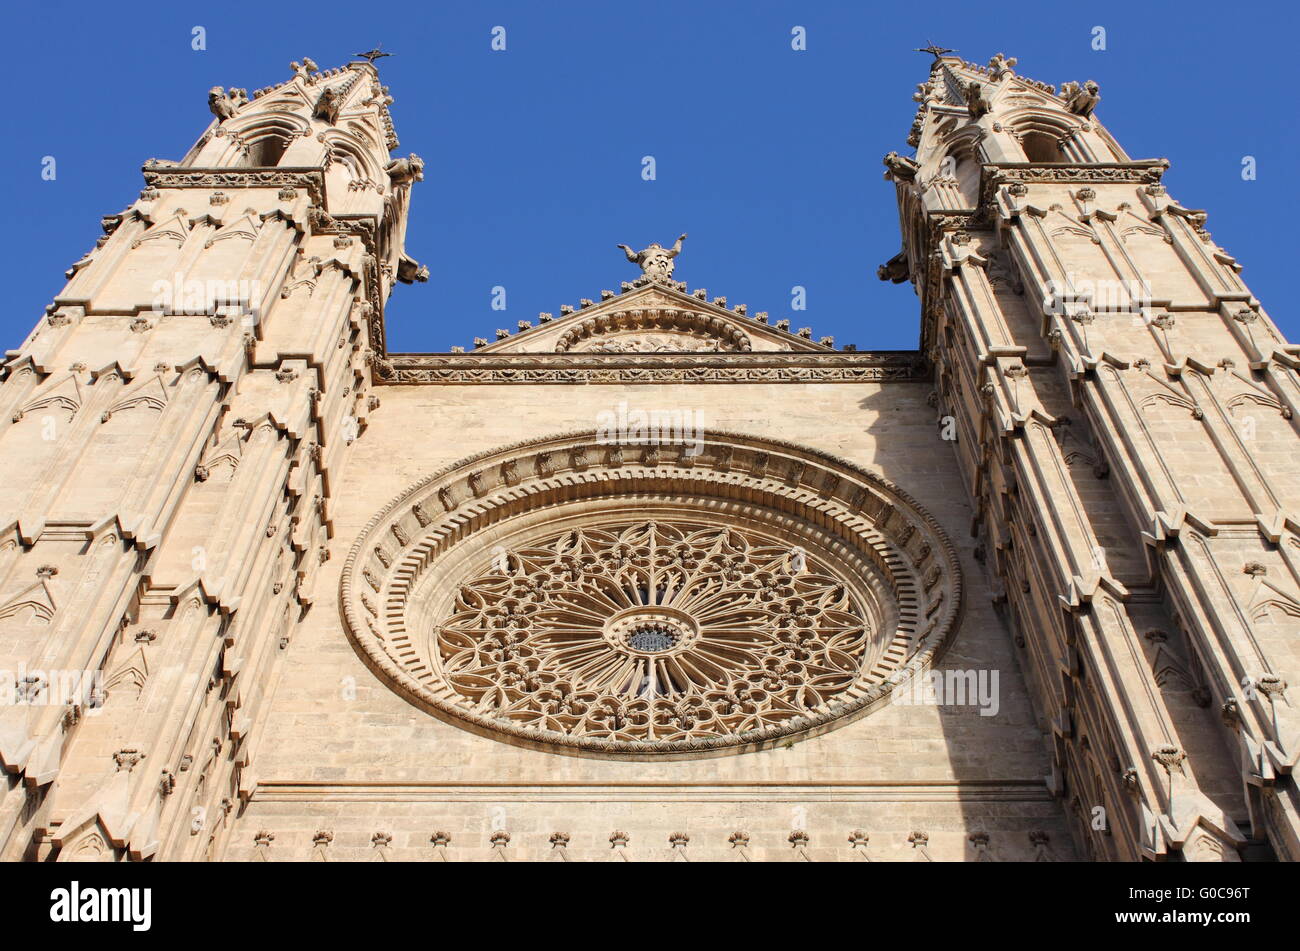 Facade of the gothic cathedral of Palma de Mallorca Stock Photo